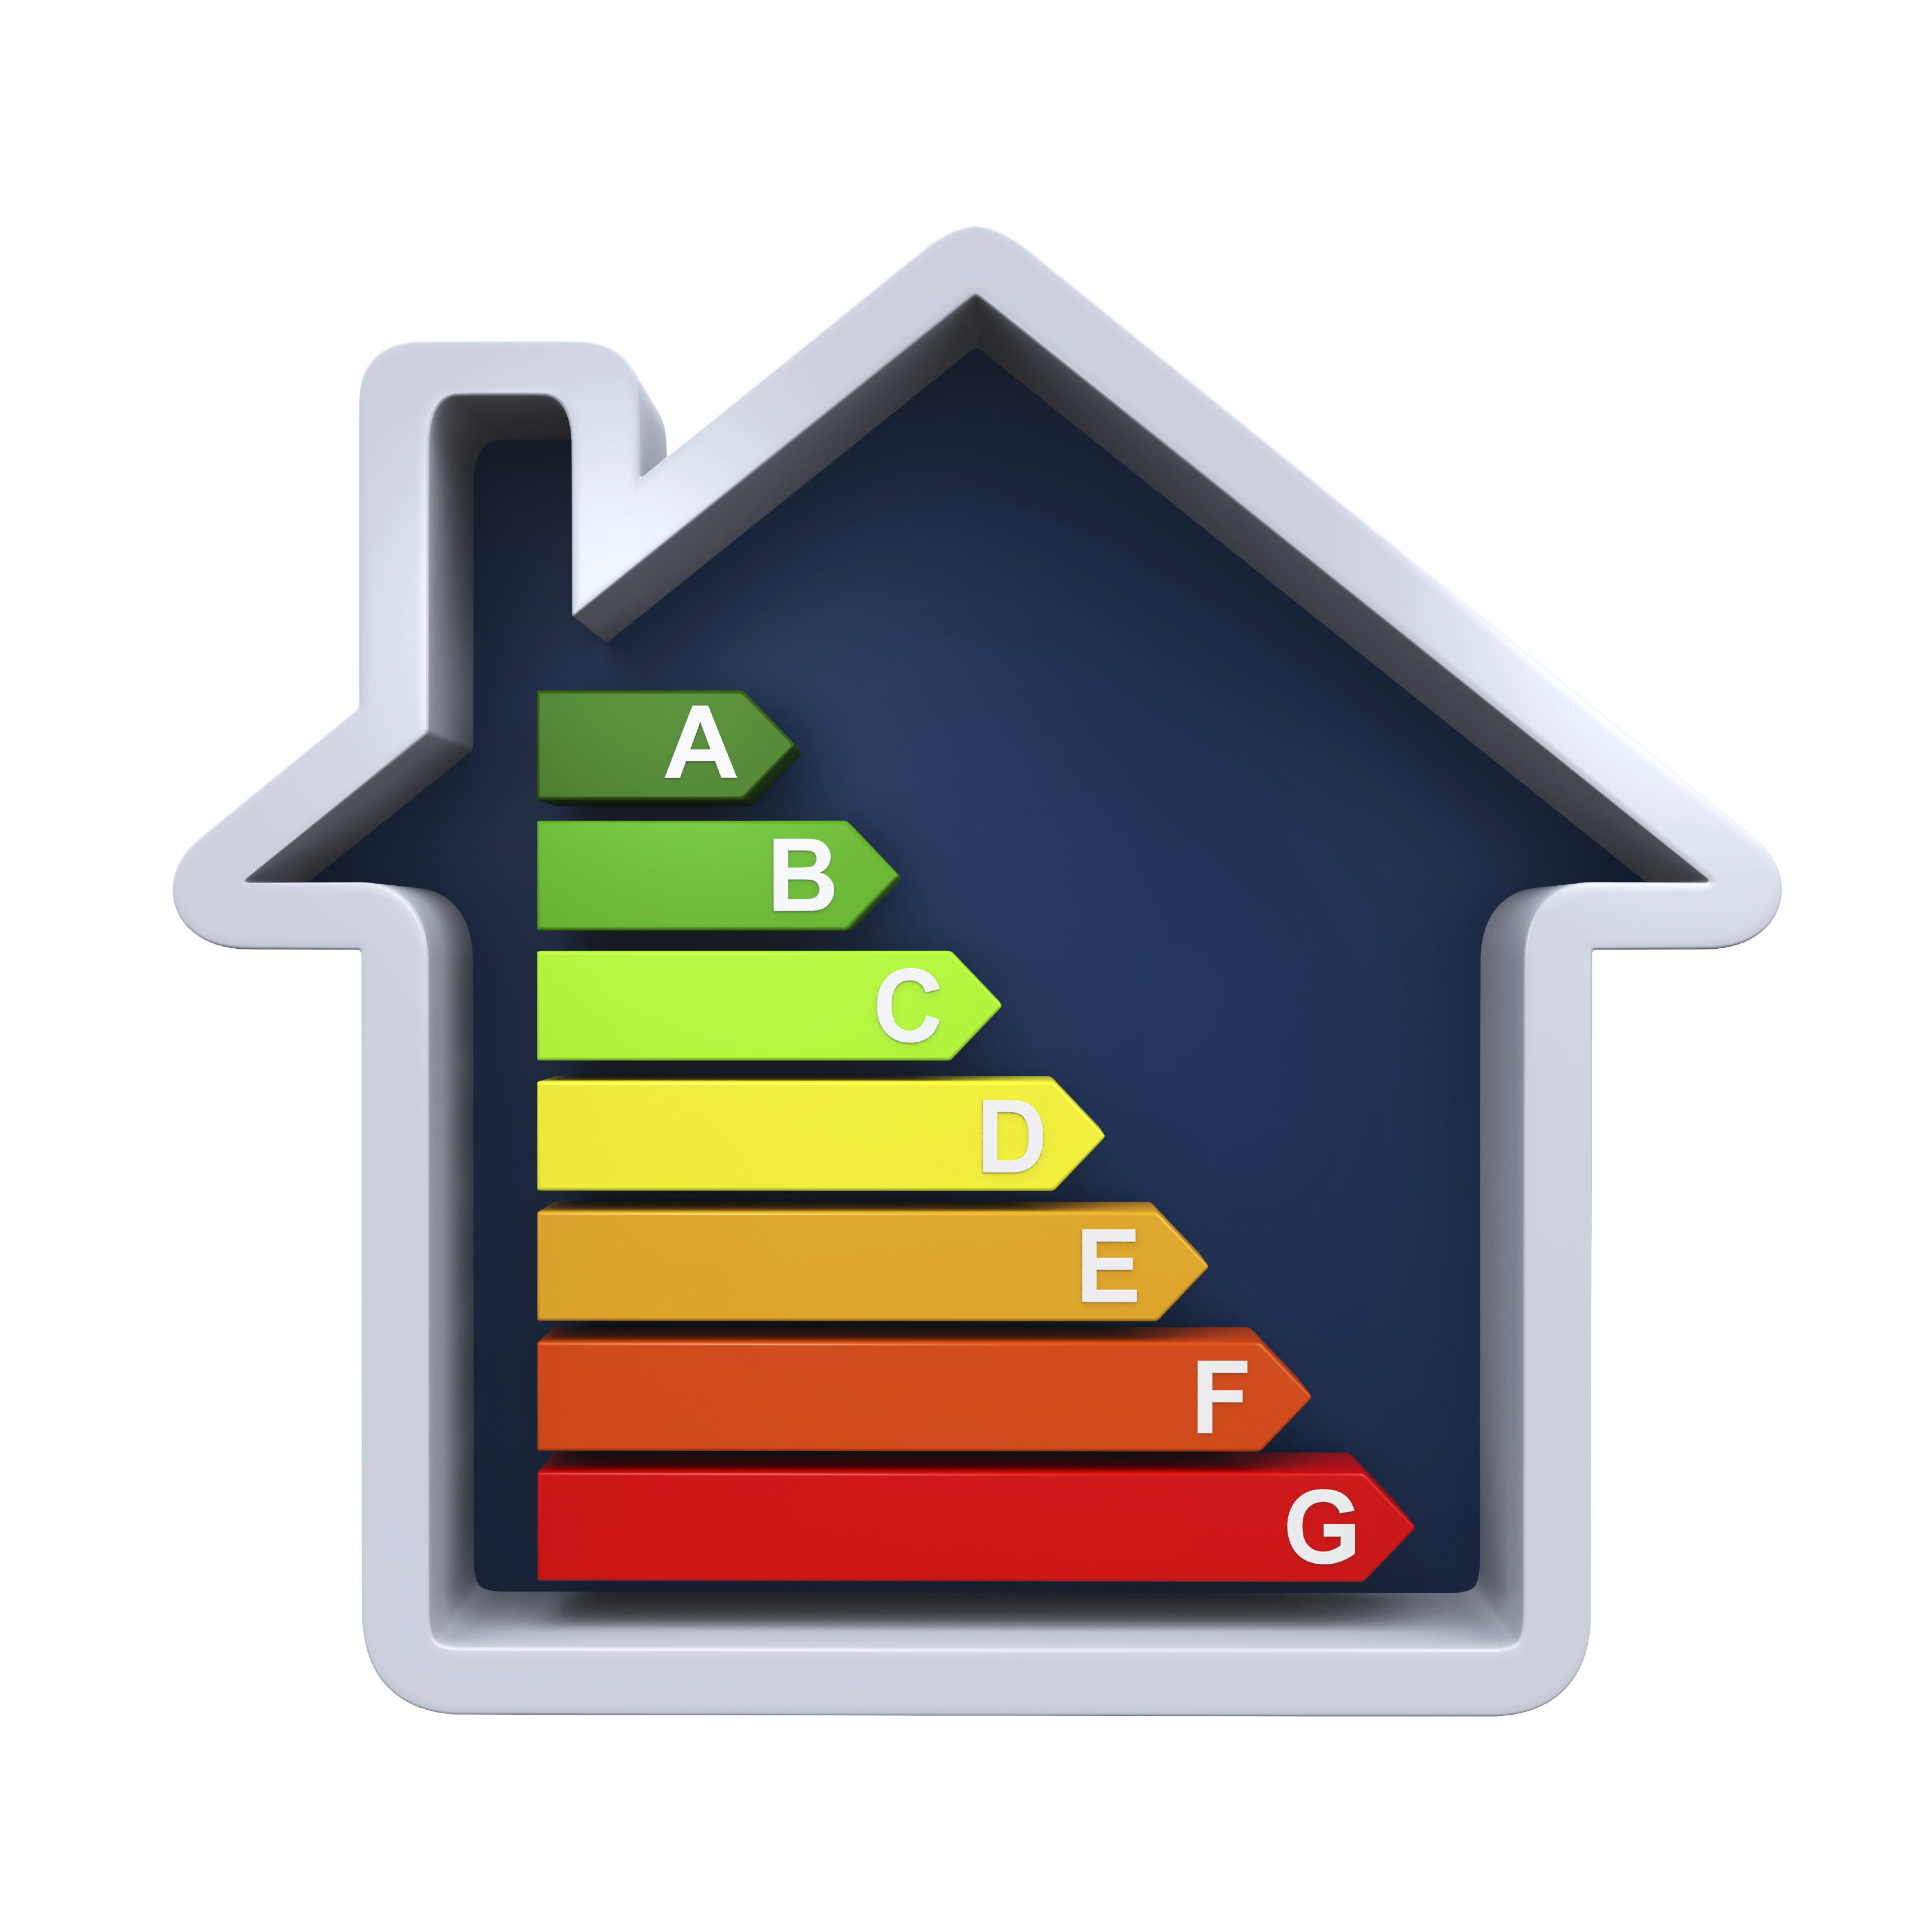 Home energy efficiency